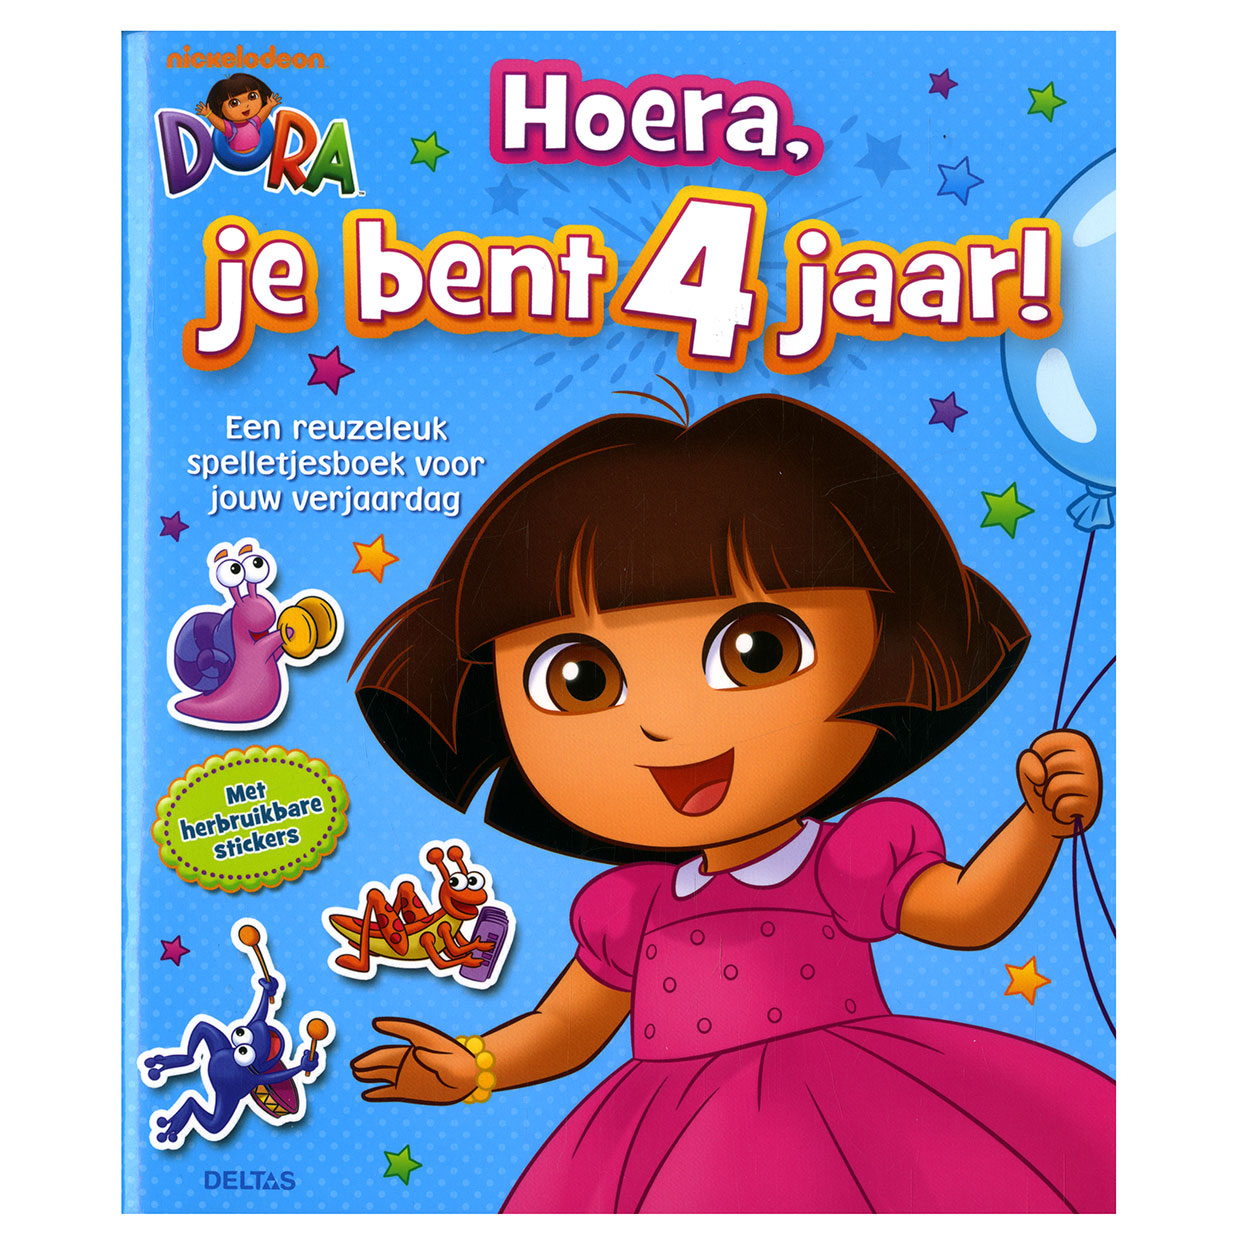 Dora Hoera, je bent 4 jaar!